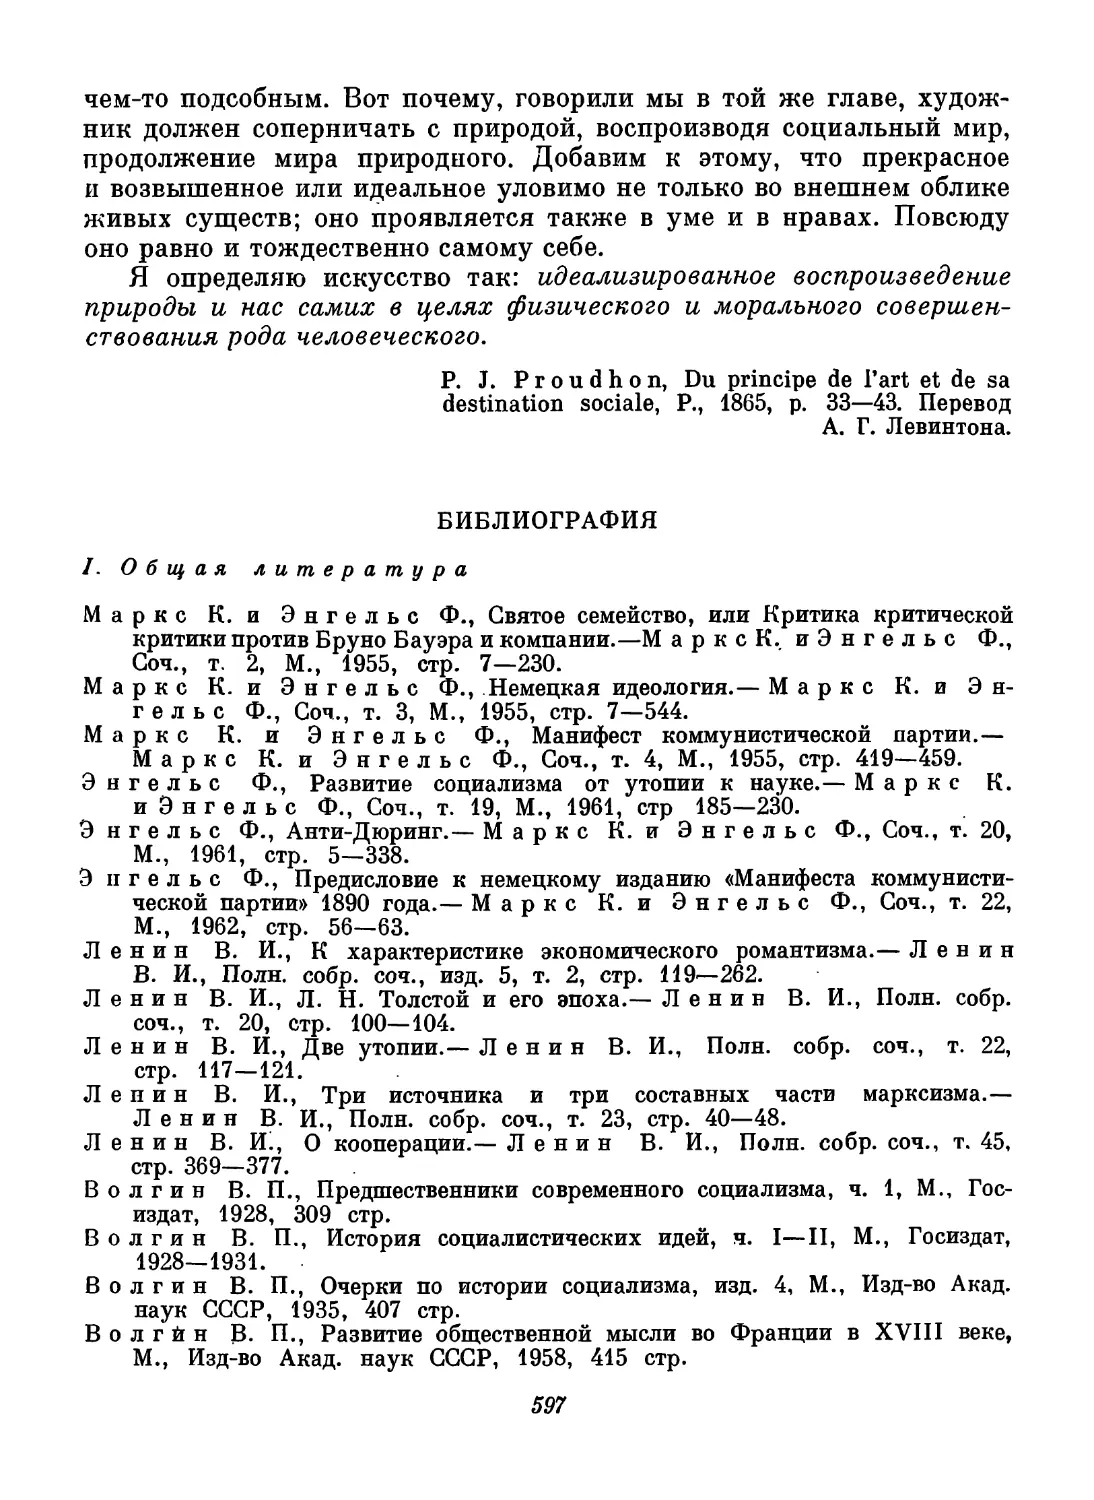 Библиография. Составители Ю. П. Мадор и А. В. Паевская